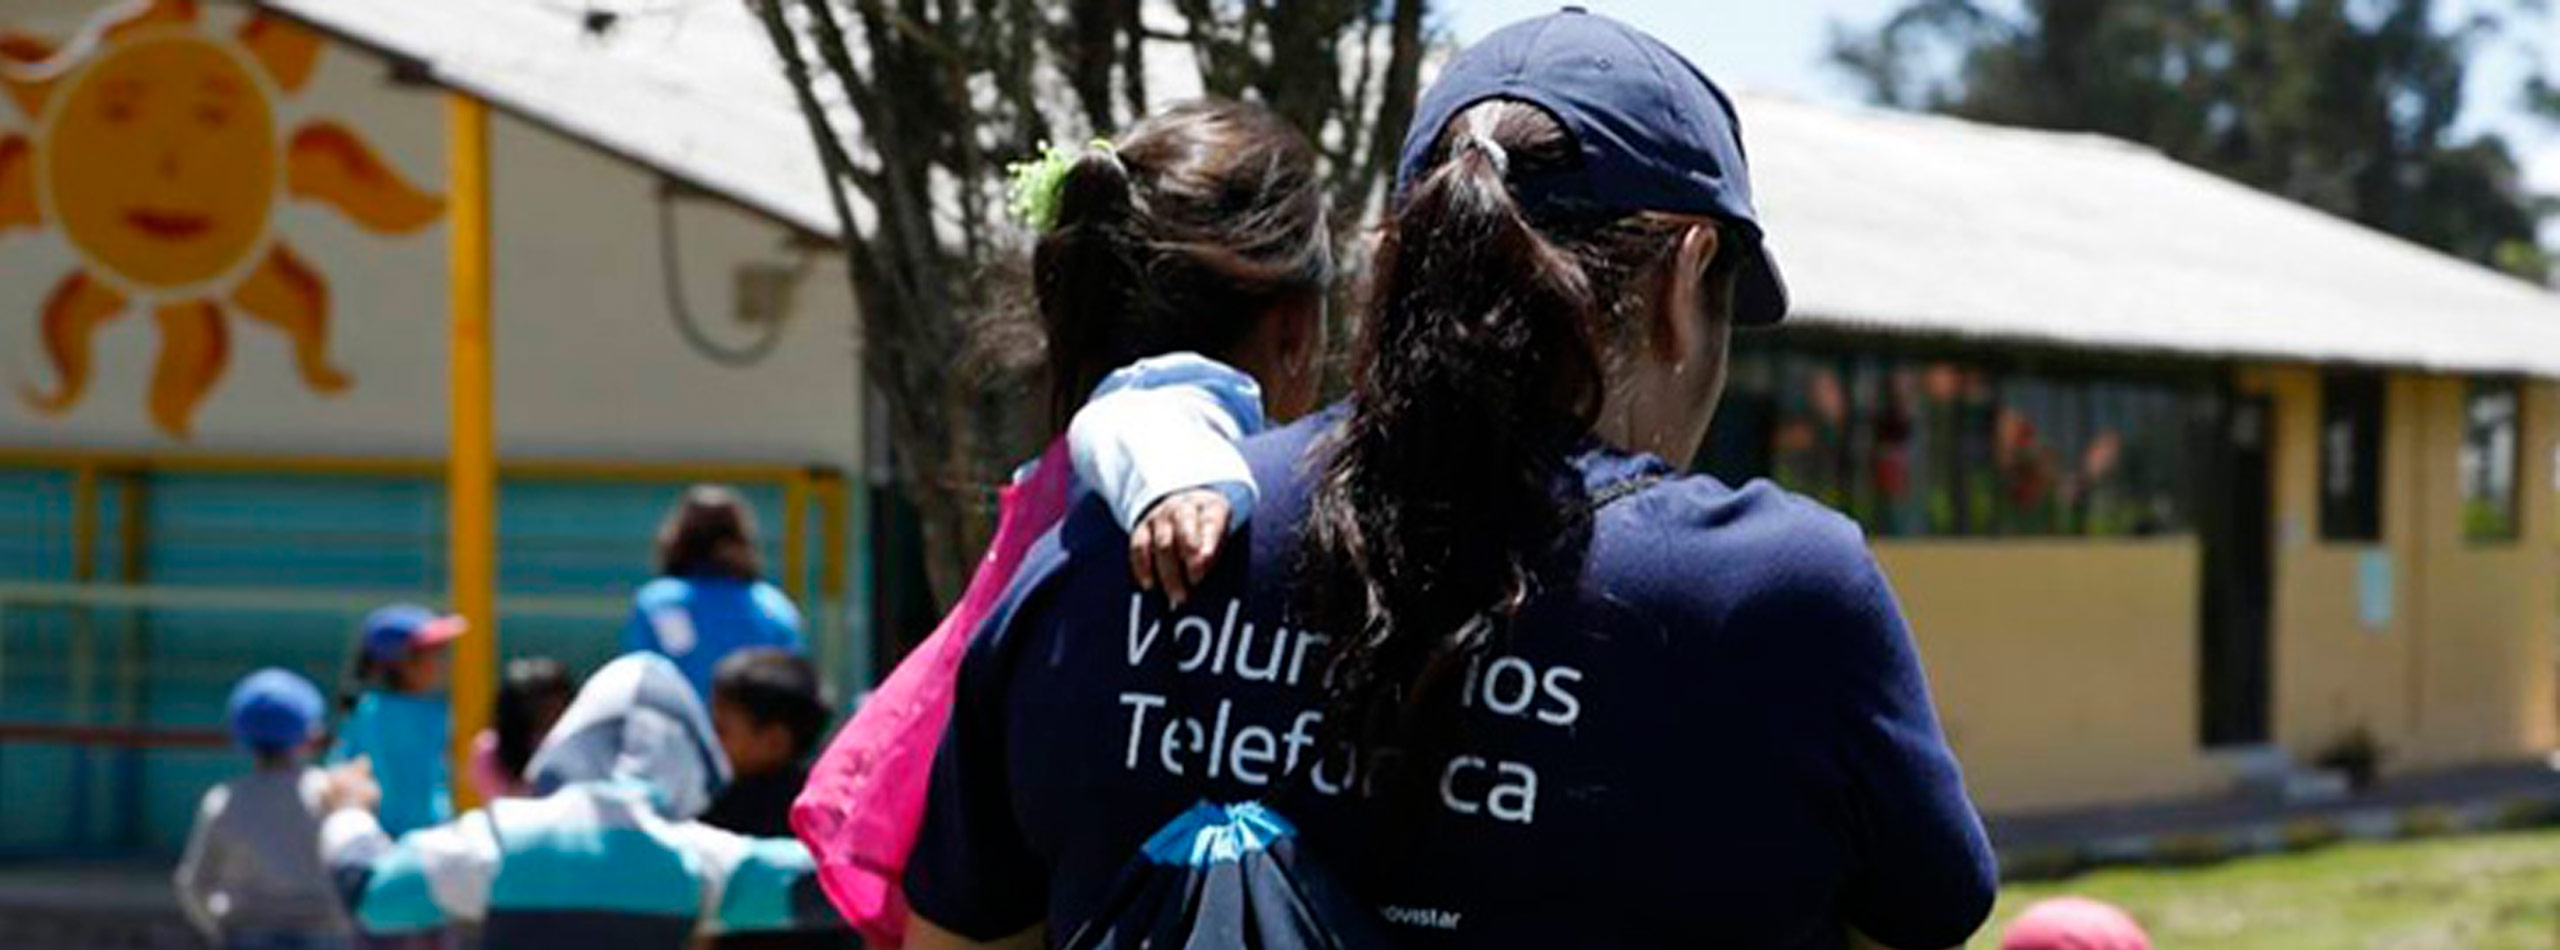 Mujeres que hacen del mundo un sitio mejor: Voluntarias Telefónica